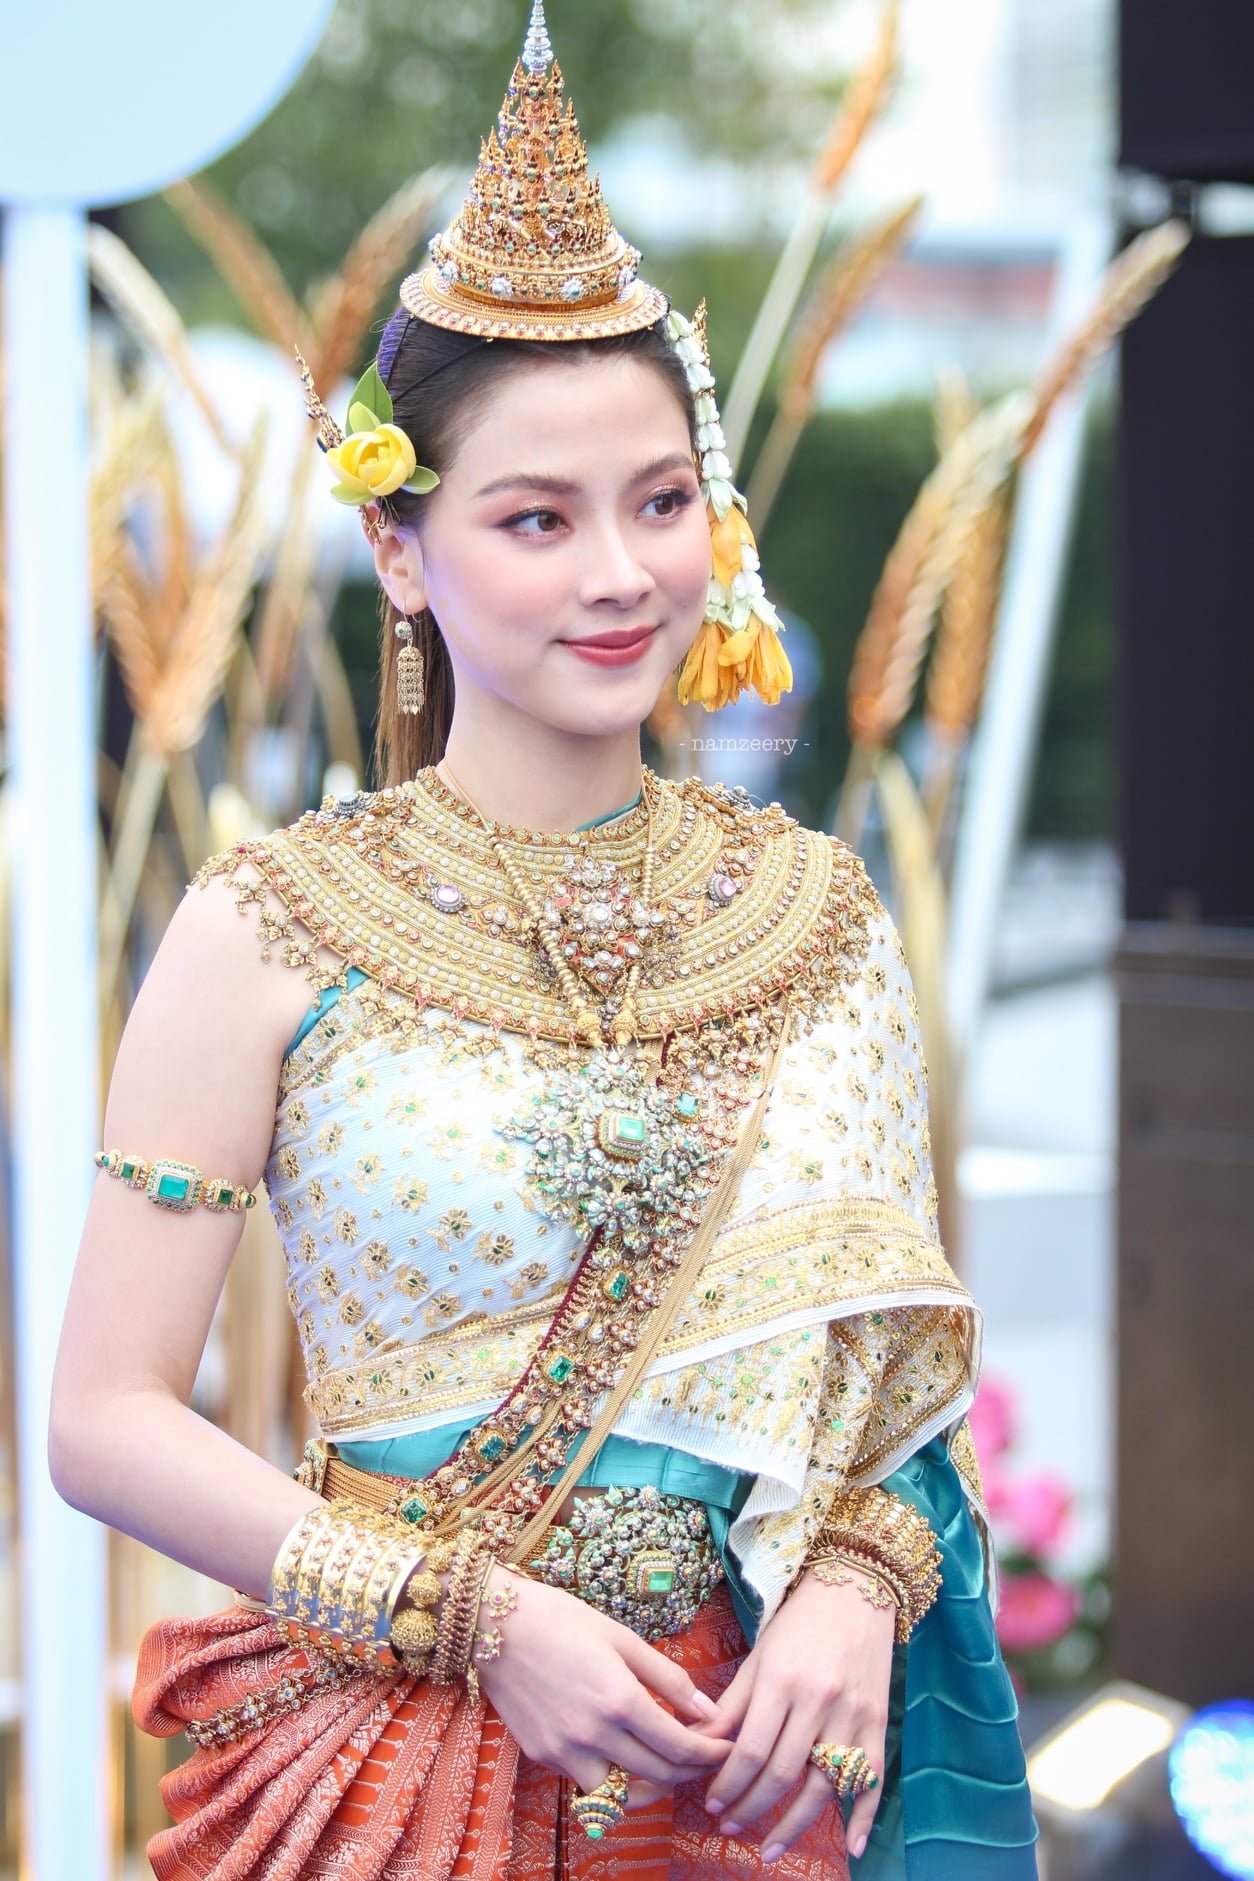 “Mỹ nhân Thái Lan” Baifern gây náo loạn với nhan sắc cực phẩm hóa thân thành “Nữ thần Songkran” 2023 - ảnh 12